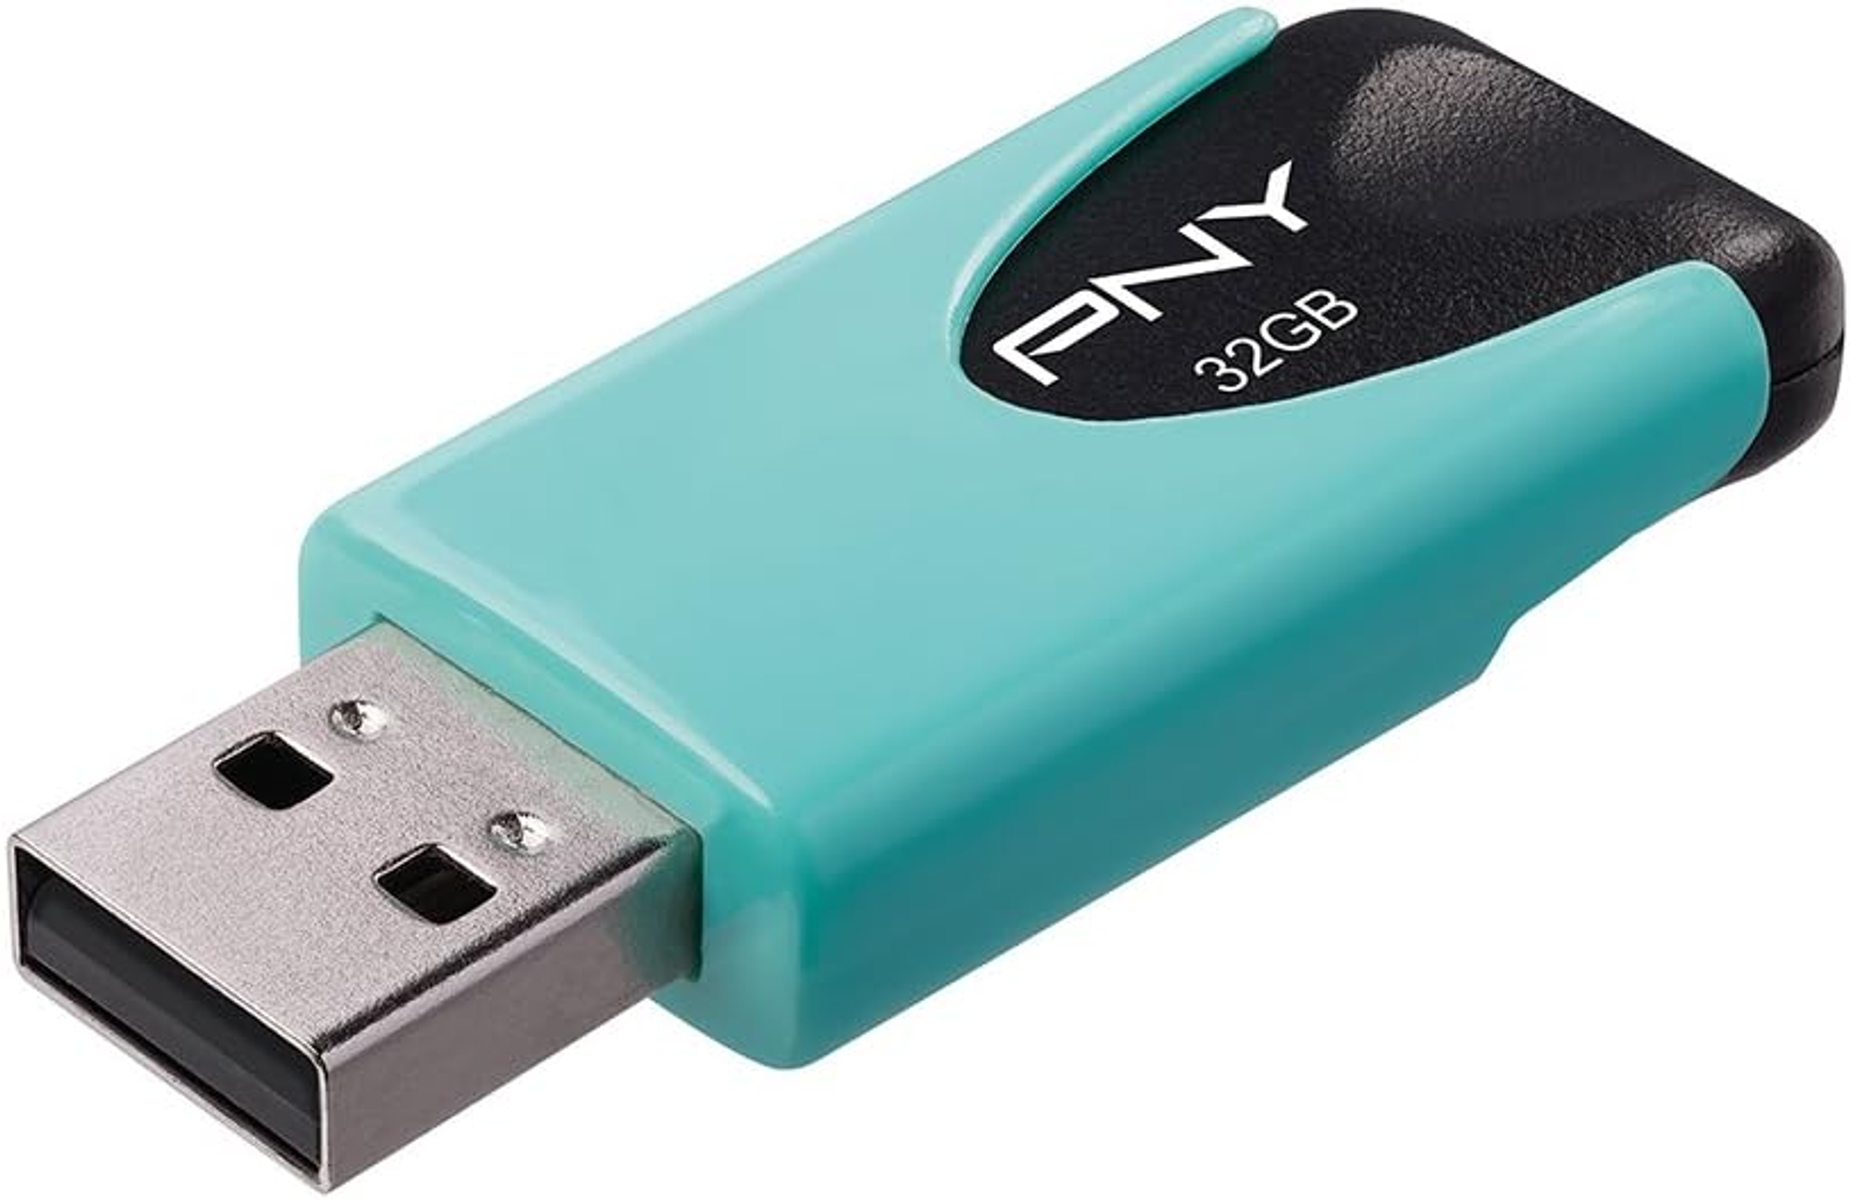 4 32 PNY USB-Flash-Laufwerk GB) Attaché (Pastell-aqua,